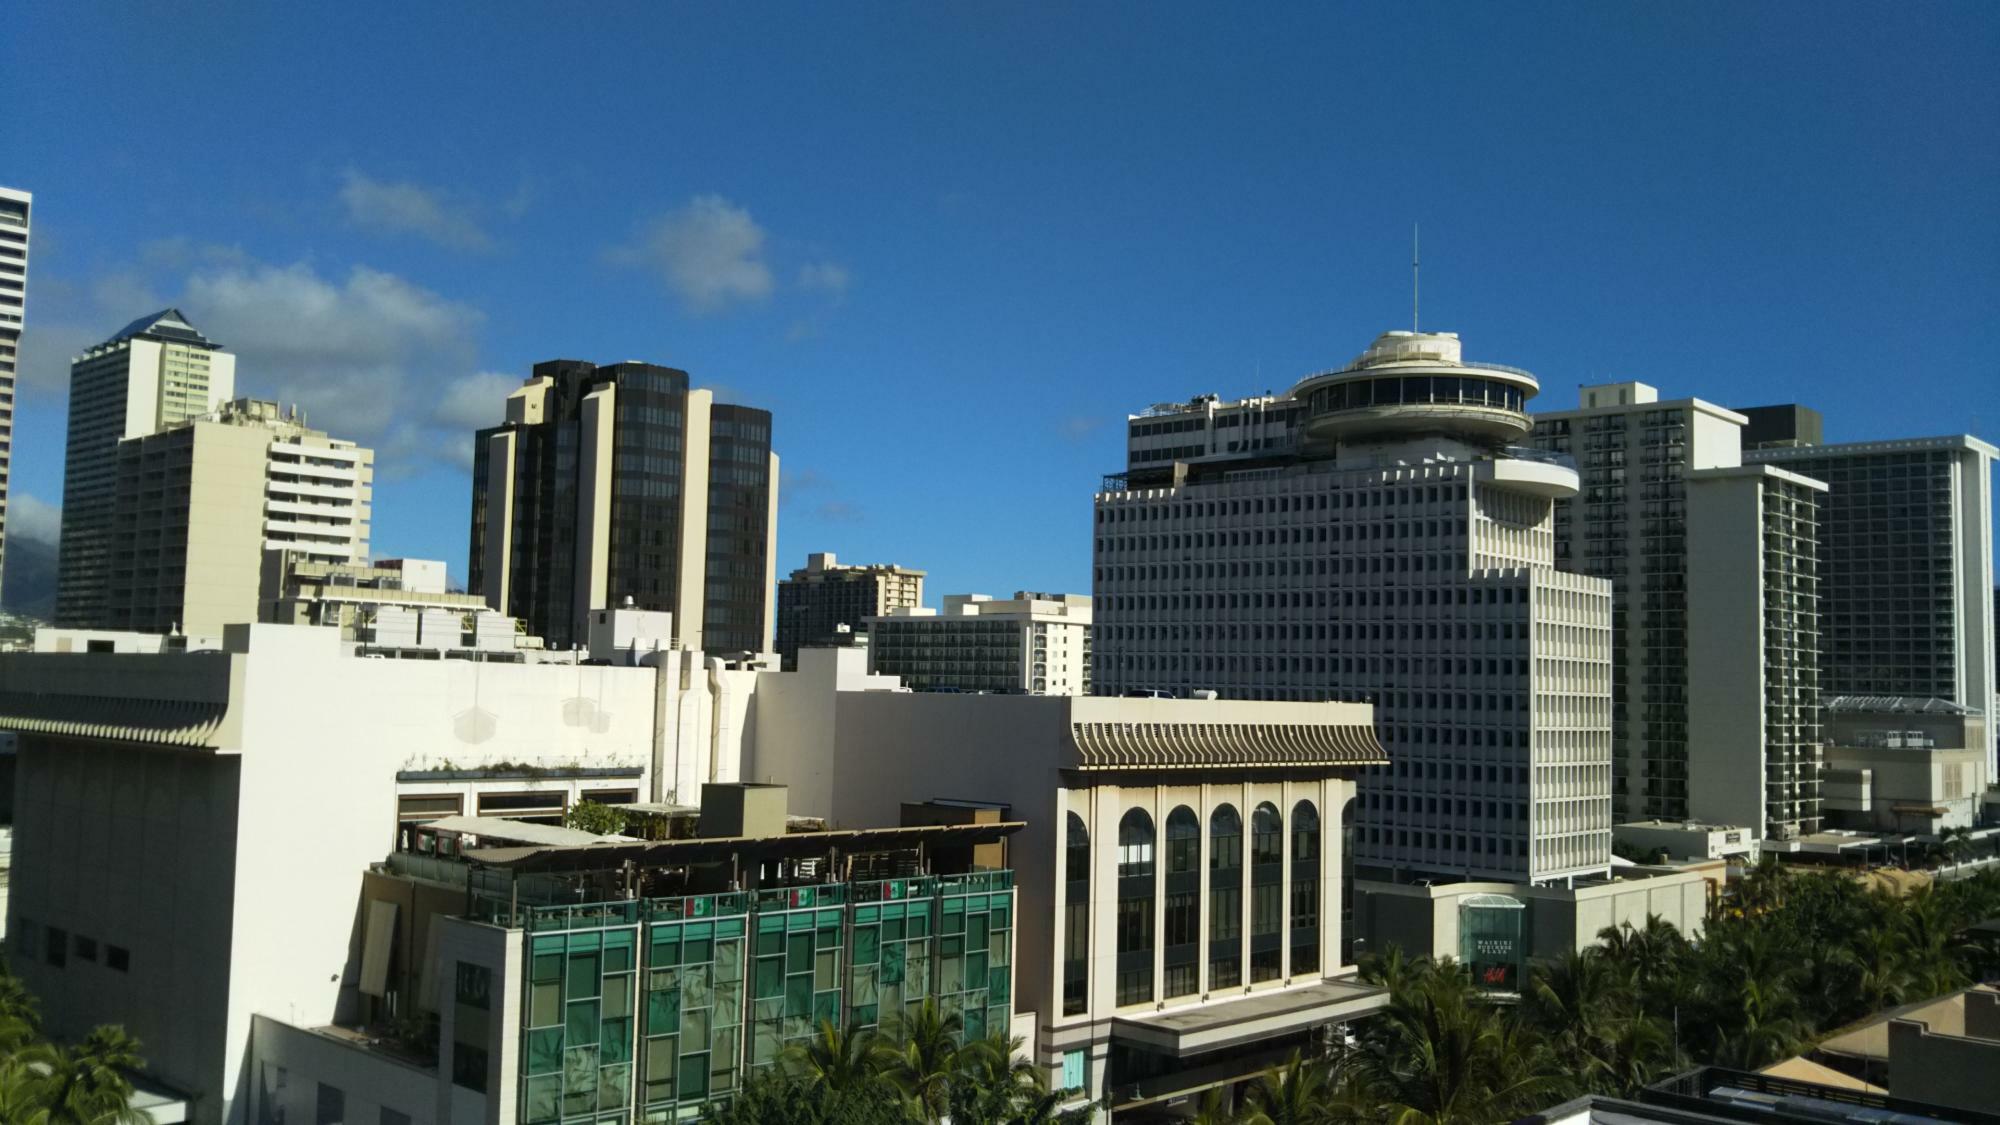 米国・ハワイ州ホノルル、ワイキキ。商業施設にビジネス街等が集中する人口密集地であるが、ダウンタウンではイオラニ宮殿やカメハメハ大王像で有名なハワイ州最高裁判所等、歴史的建築物も多い（2018年撮影）。